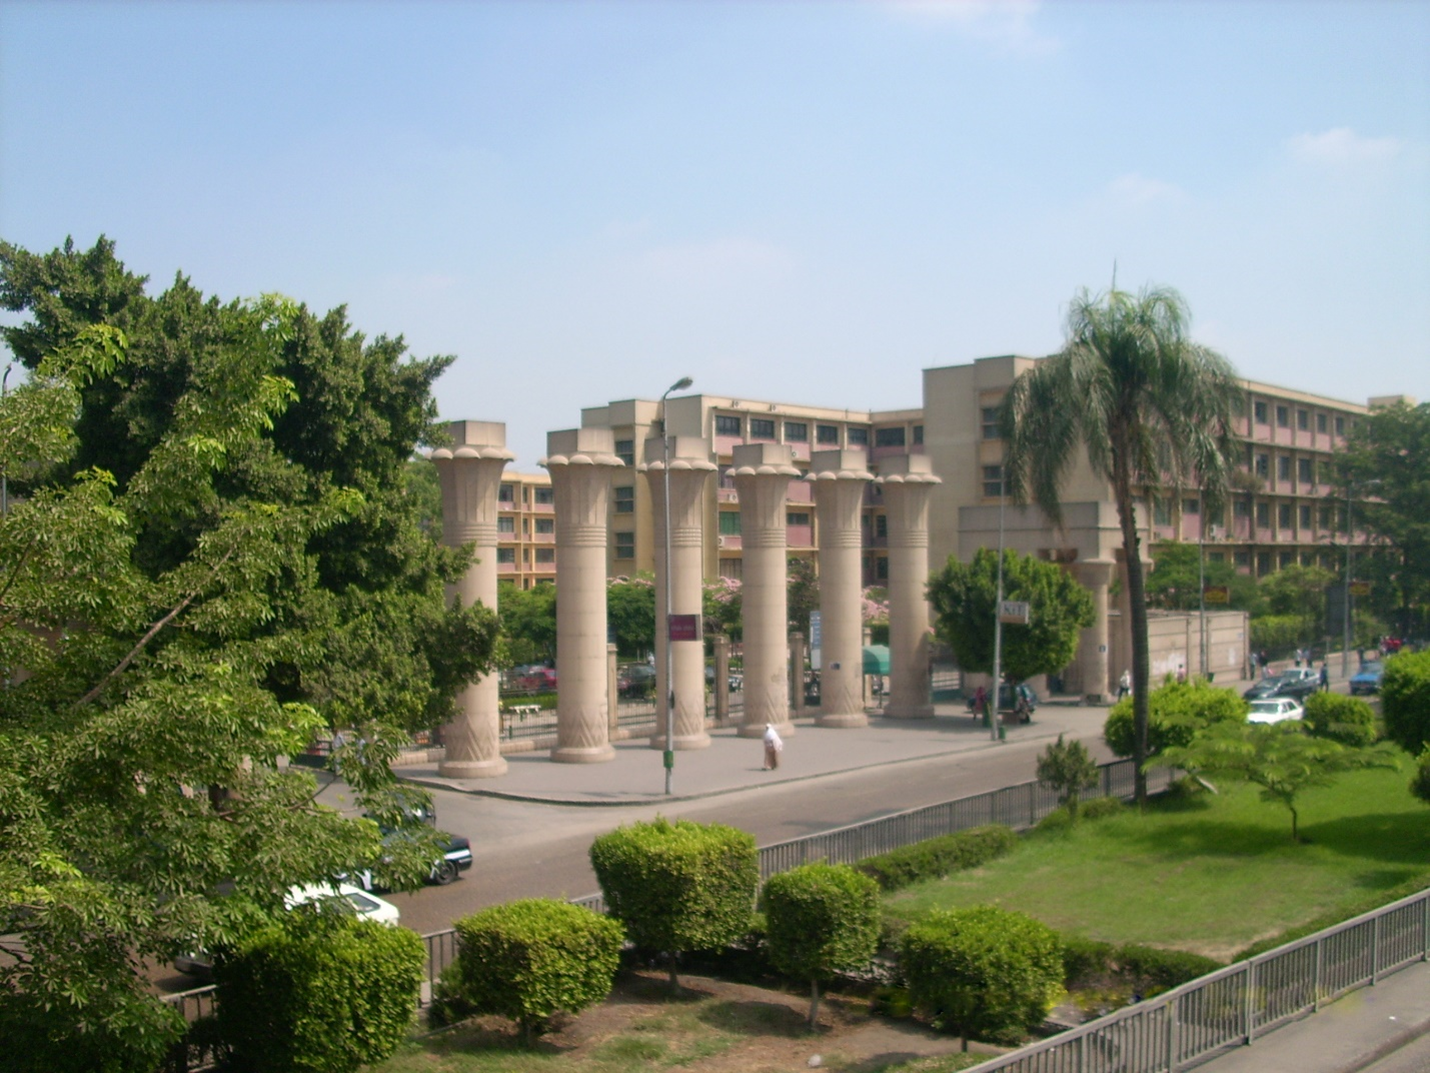 ما هي أفضل 10 جامعات مصرية؟ ما مميزات كل جامعة؟ تعرف عليهم